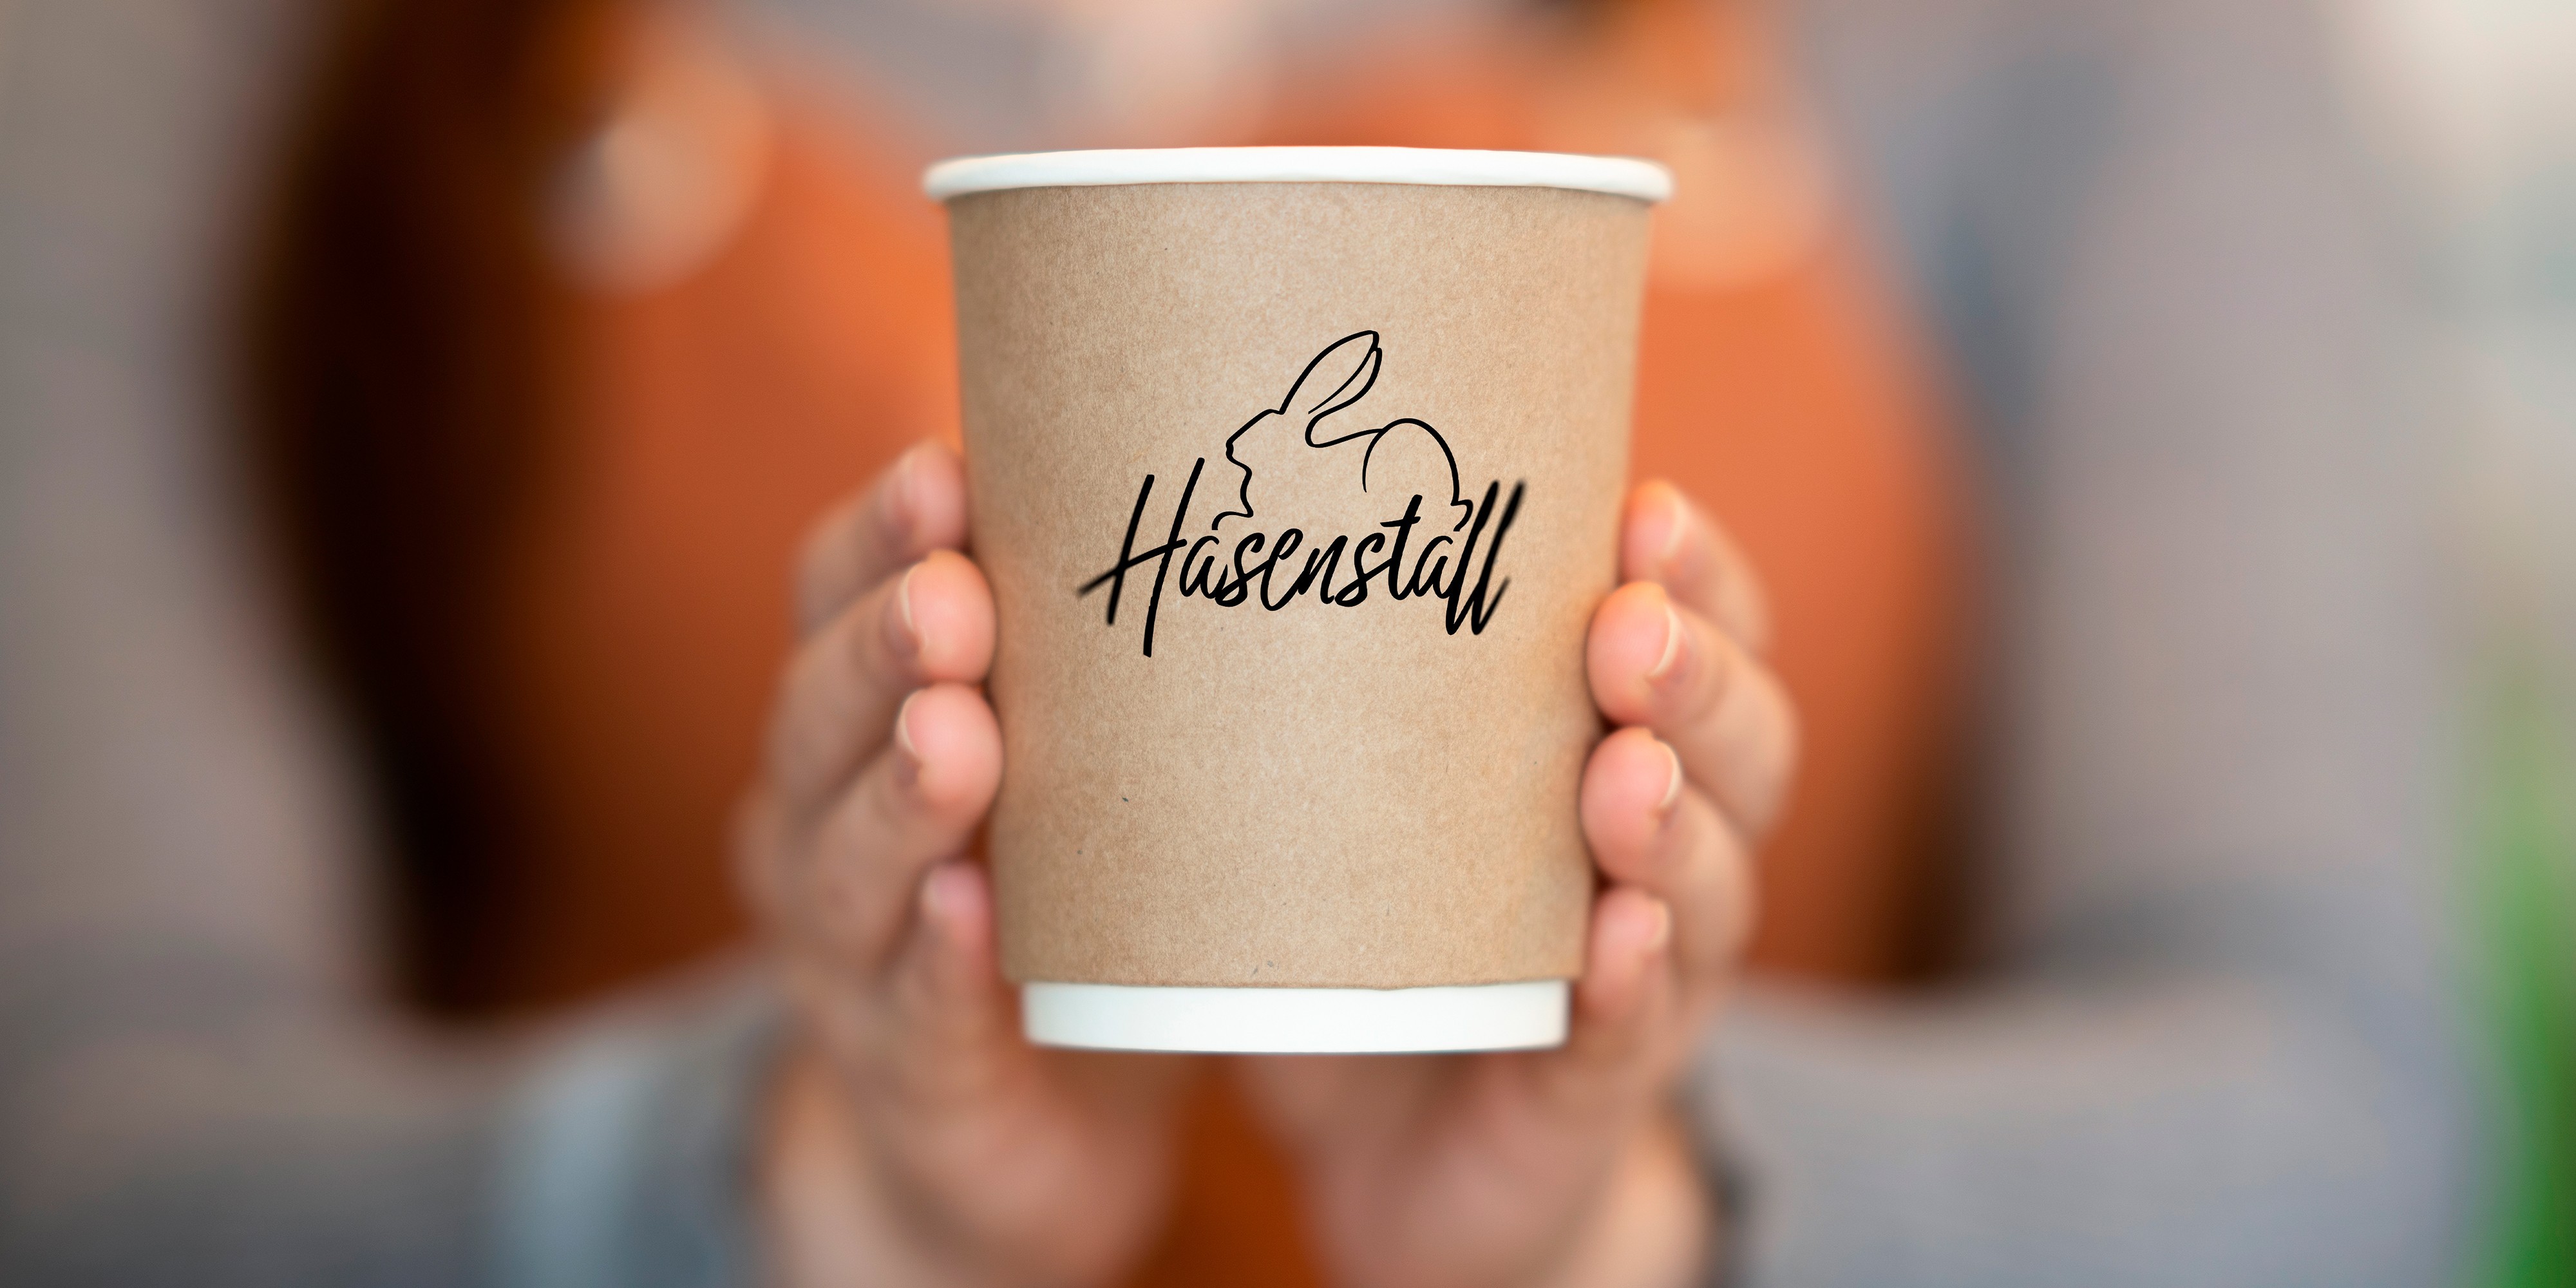 Кафе Hasenstall в вашем доме